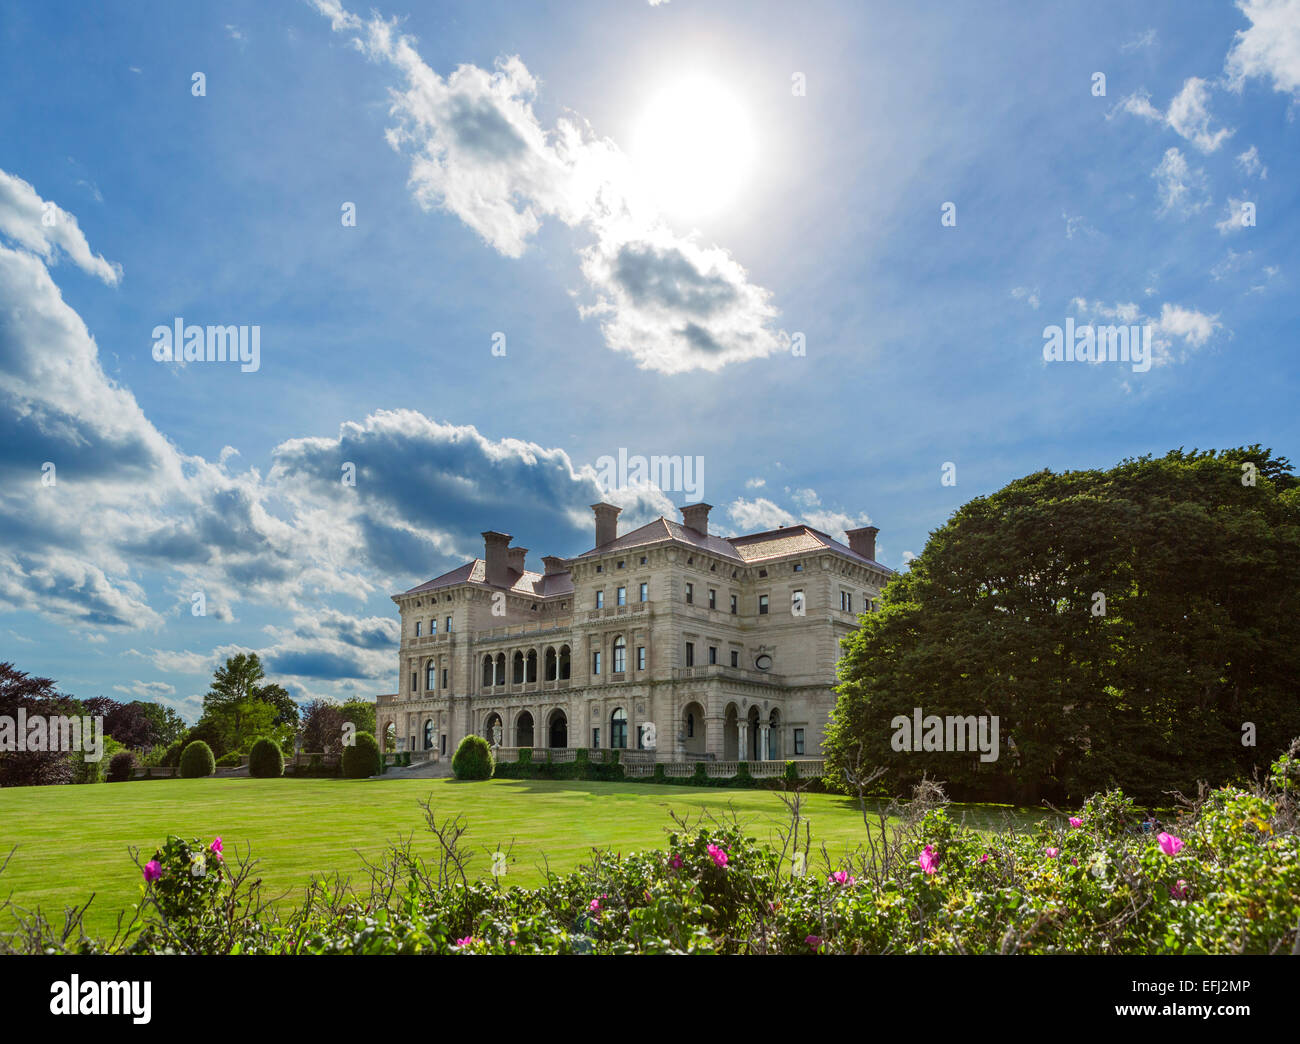 El Breakers, mansión histórica y la casa de verano de Cornelius Vanderbilt II, en Newport, Rhode Island, EE.UU. Foto de stock